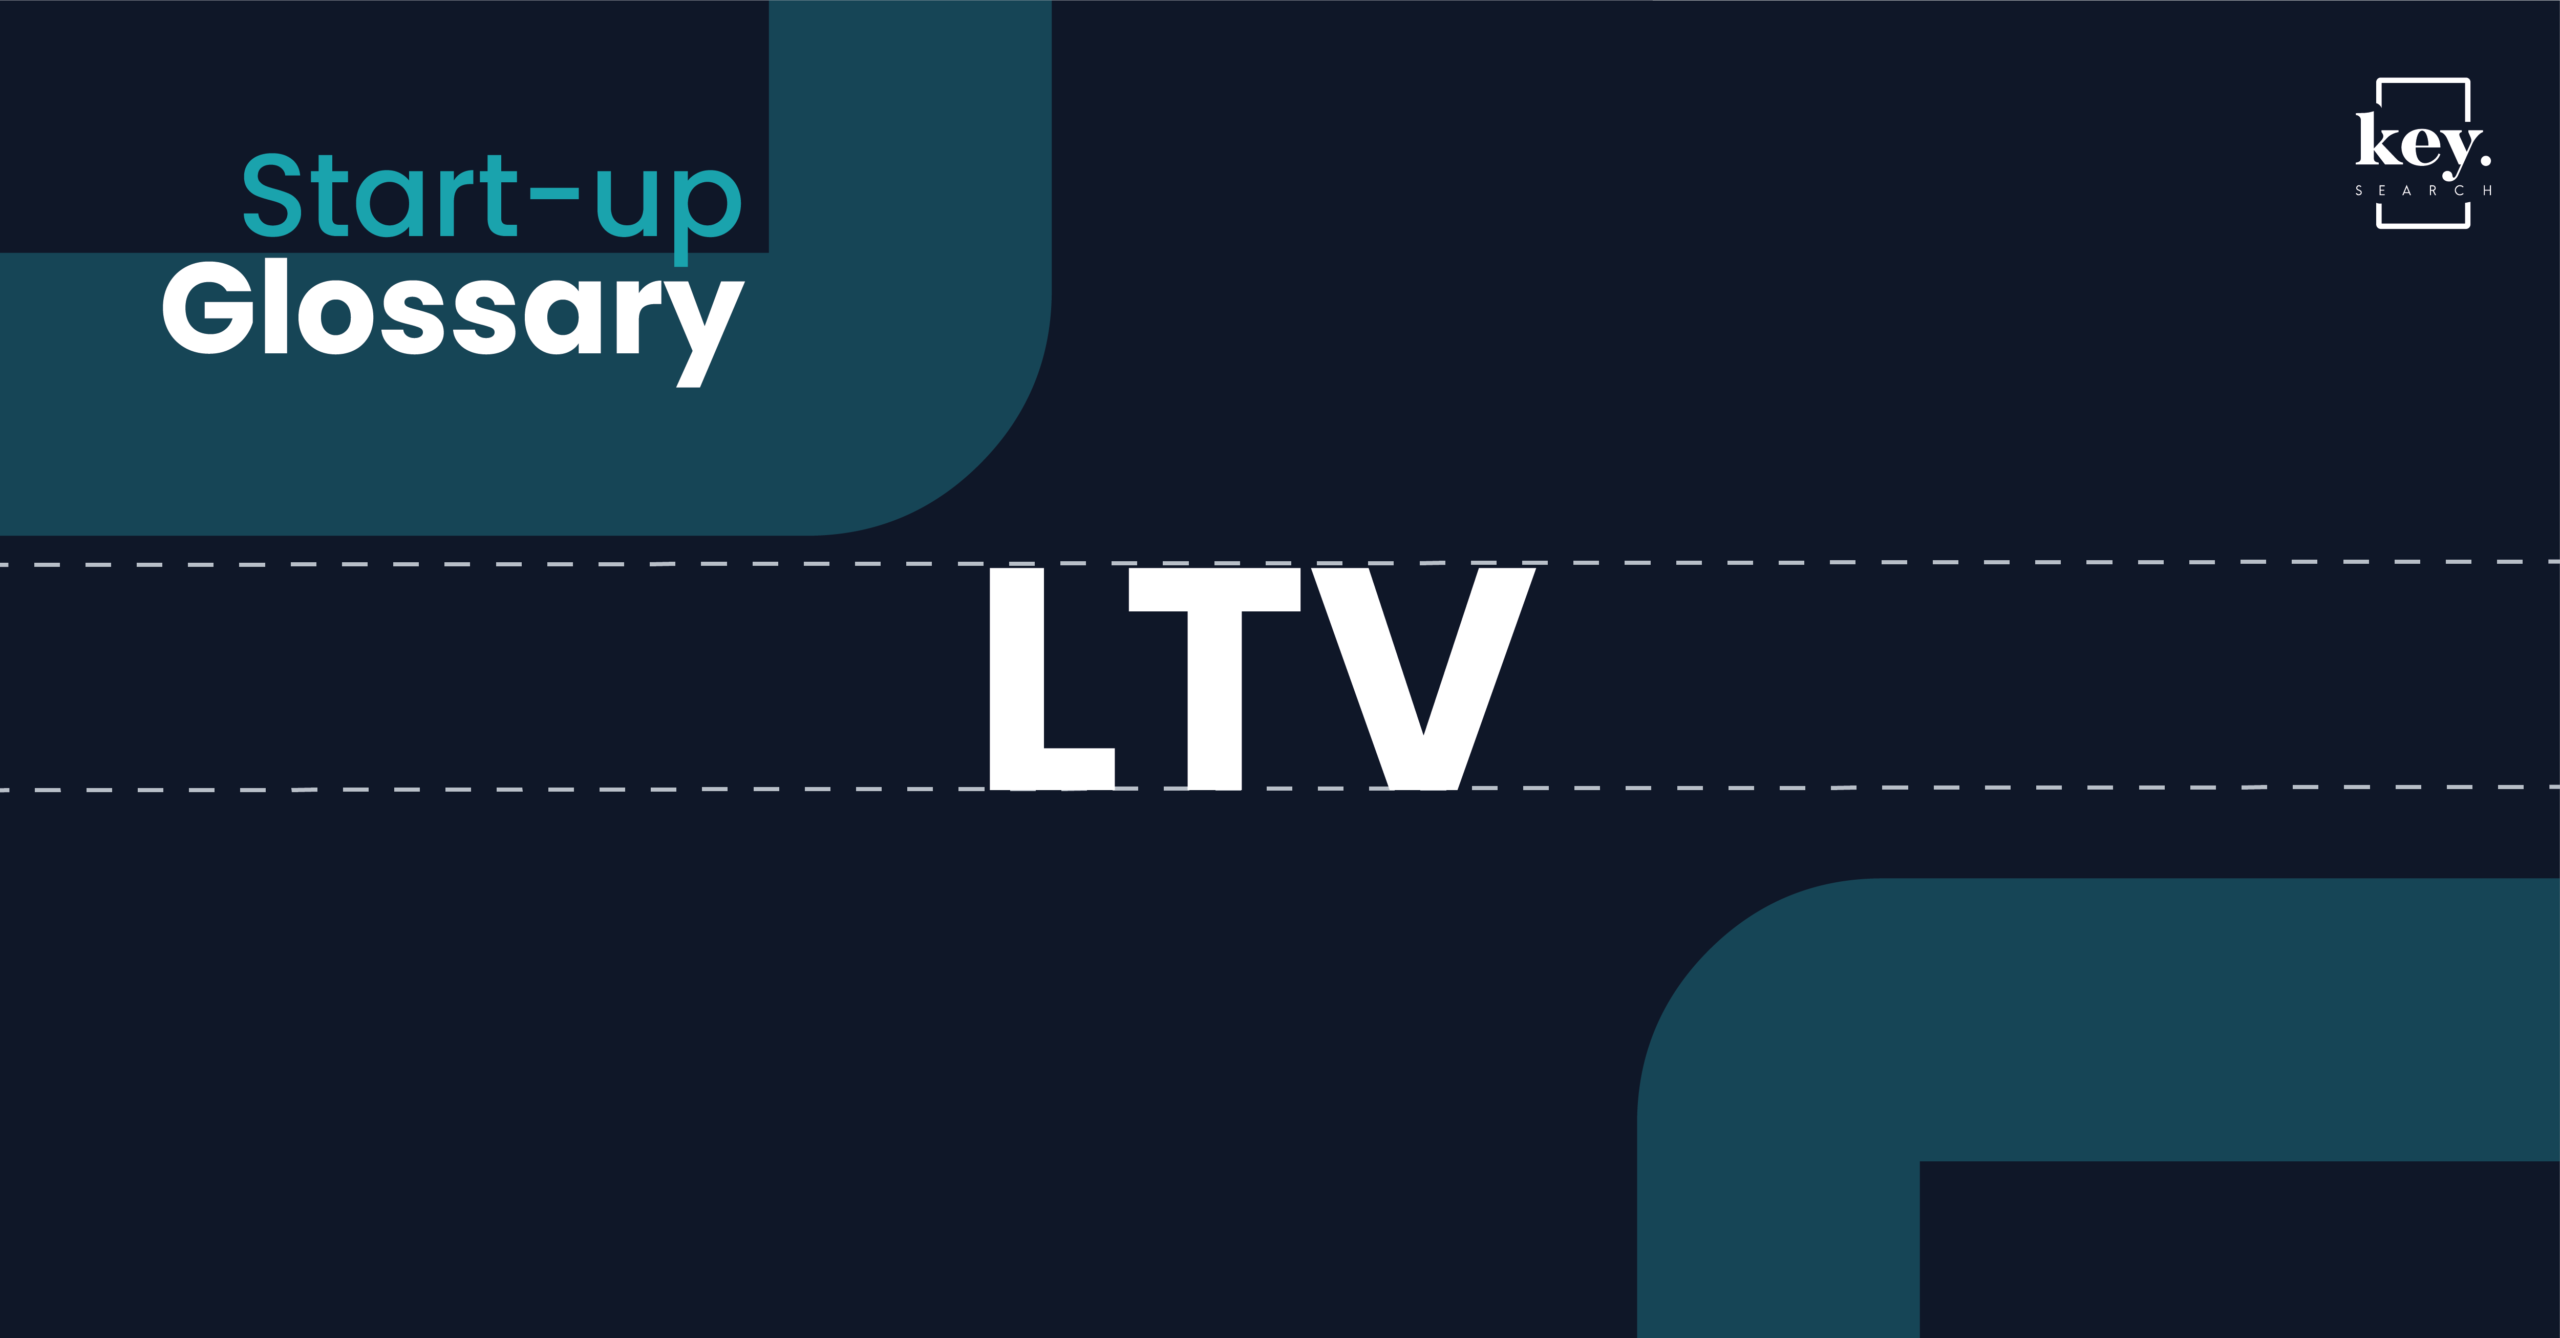 Start-up Glossary_LTV